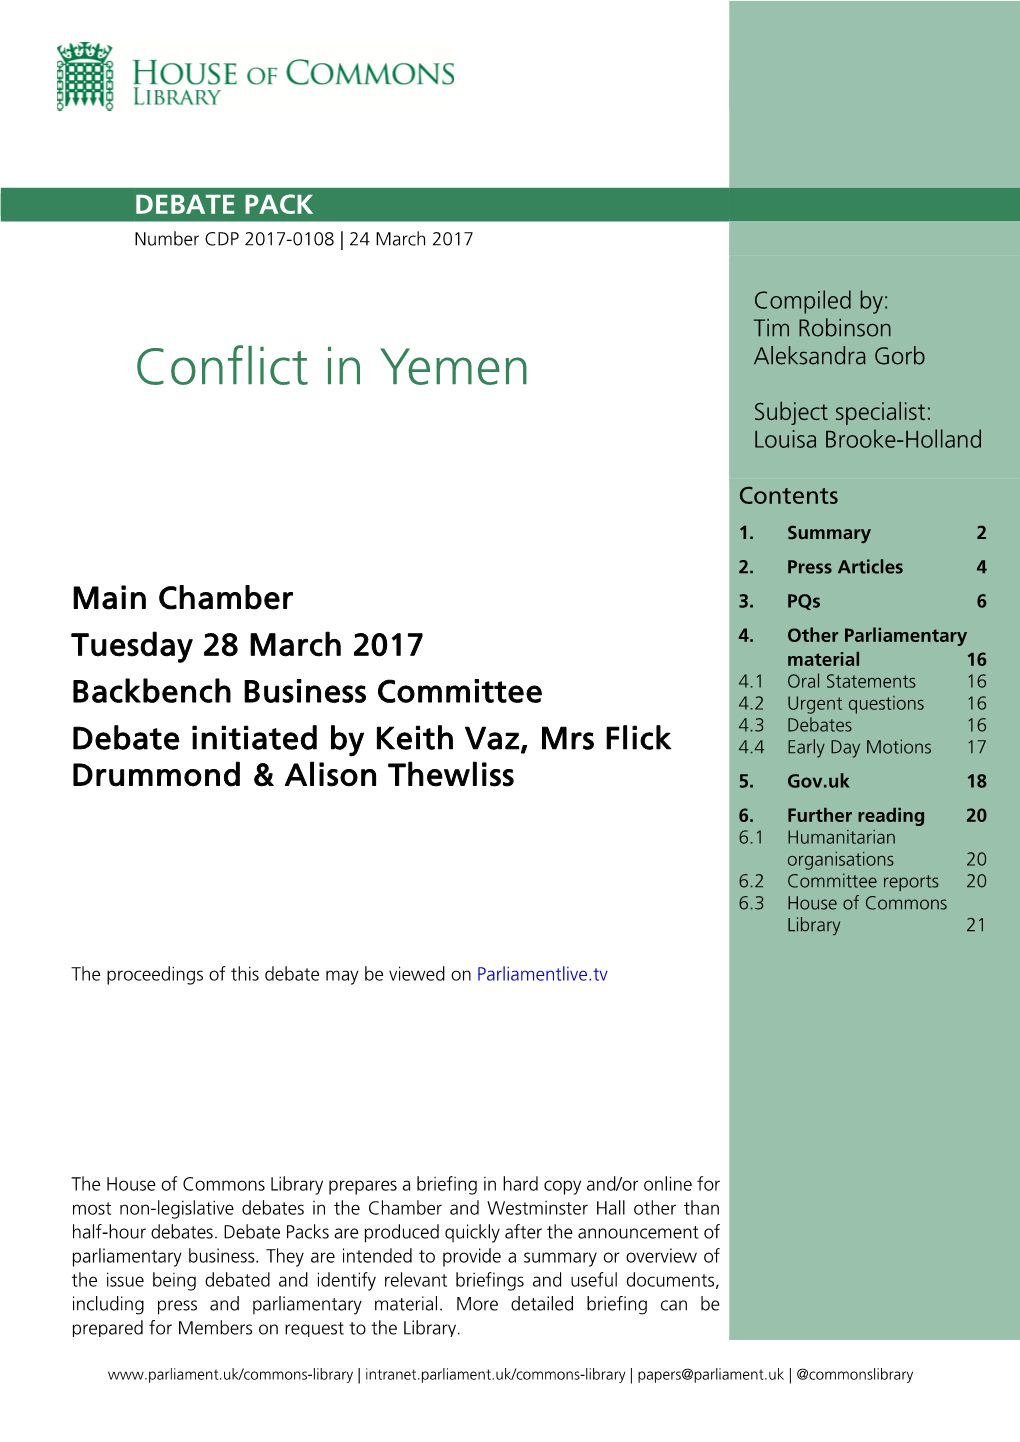 Conflict in Yemen Subject Specialist: Louisa Brooke-Holland